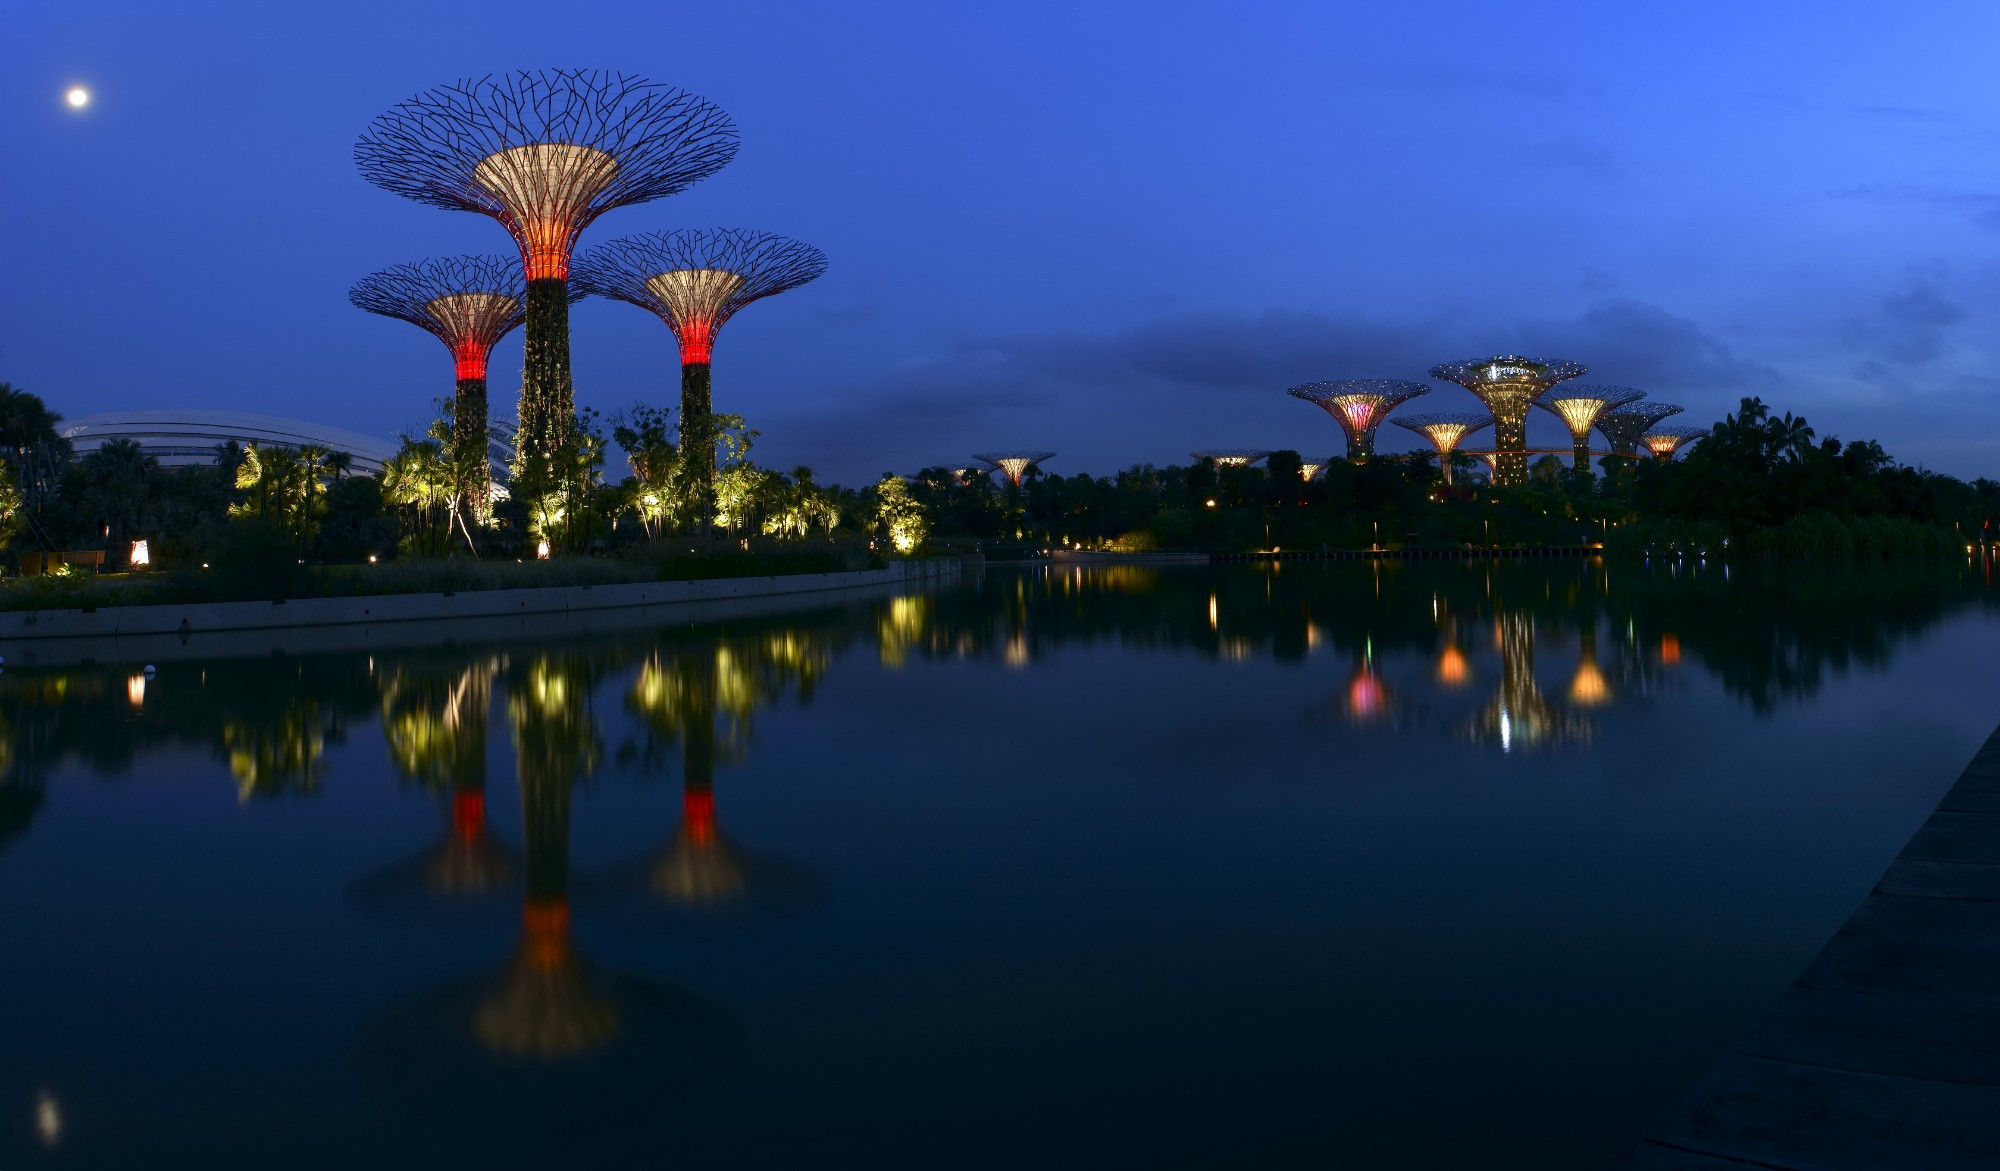 Панорама Садов у бухты.<br/>
«Супердеревья» самого претенциозного сингапурского проекта Gardens by the Bay, открывающегося для посещений частями; презентация Bay South, засаженного «супердеревьями», прошла 29 июня 2012 года. Самый большой из трёх садов — 54 гектара — засажен в том числе гигантскими технодеревьями высотой от 25 до 50 метров. Каждое из них оплетено растительной экзотикой и напичкано фотовольтаическими системами (панелями, перерабатывающими солнечную энергию). Энергии одиннадцати «супердеревьев» достаточно, чтобы полностью освещать все здания этой части набережной, а по ночам светиться разноцветными огнями (шоу называется «Садовой рапсодией»). На стволах и в теплицах в стволах деревьев высажено 162 900 растений 200 видов — в основном разноцветный мох, орхидеи и тропические цветы, полив которых происходит за счет энергии «супердеревьев». Проектировать новые хай-тек-проекты, полностью обеспечивающие себя энергией, с некоторых пор стало в архитектуре правилом хорошего тона. Другие биомимикрические функции проекта: сбор дождевой воды для ирригации садов и фонтанов и охлаждение с помощью системы пассивной вентиляции.